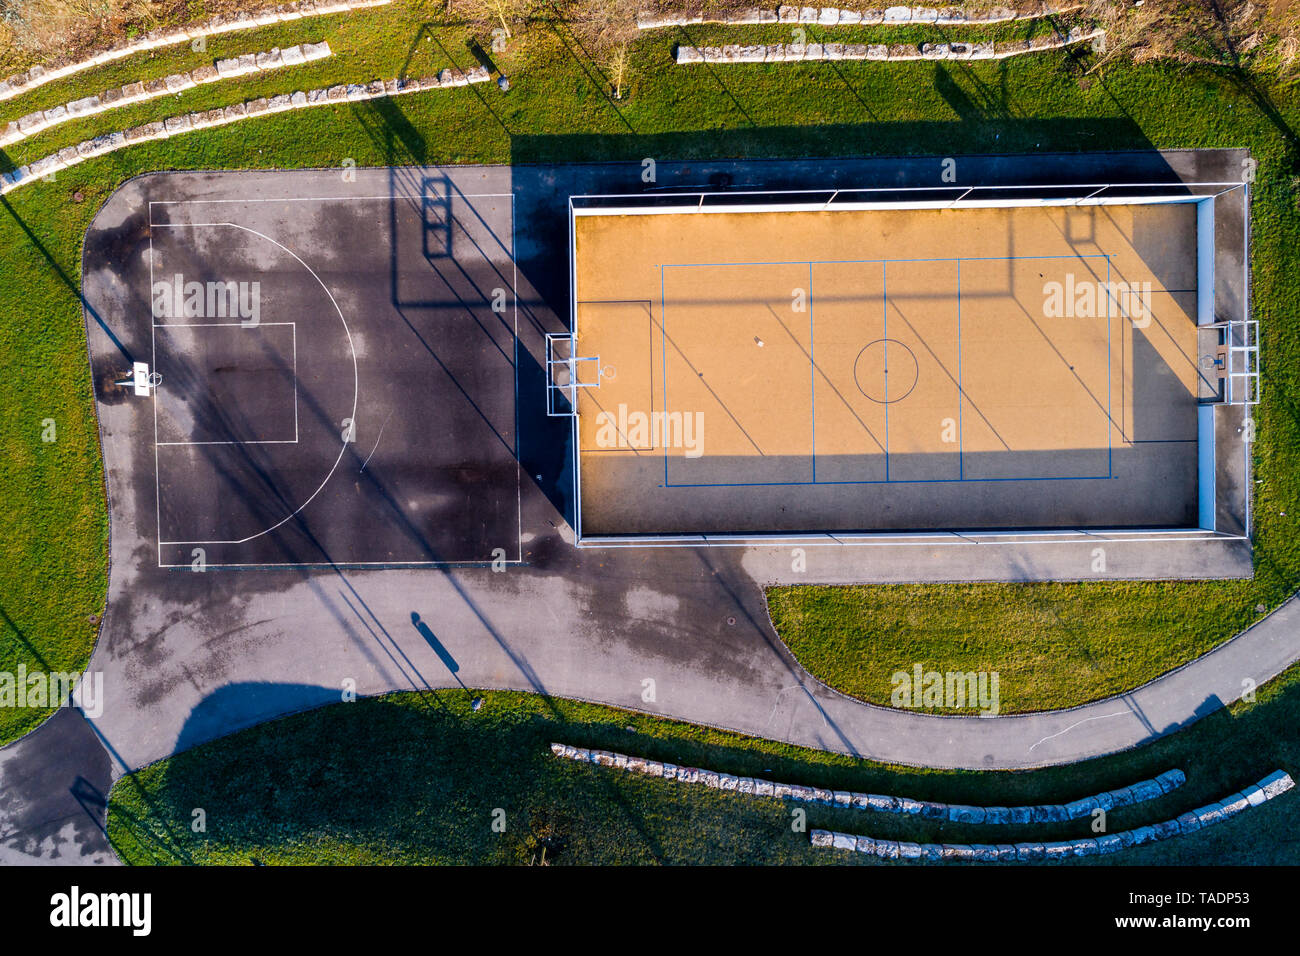 Terrain de basket-ball vide, vue du dessus Banque D'Images